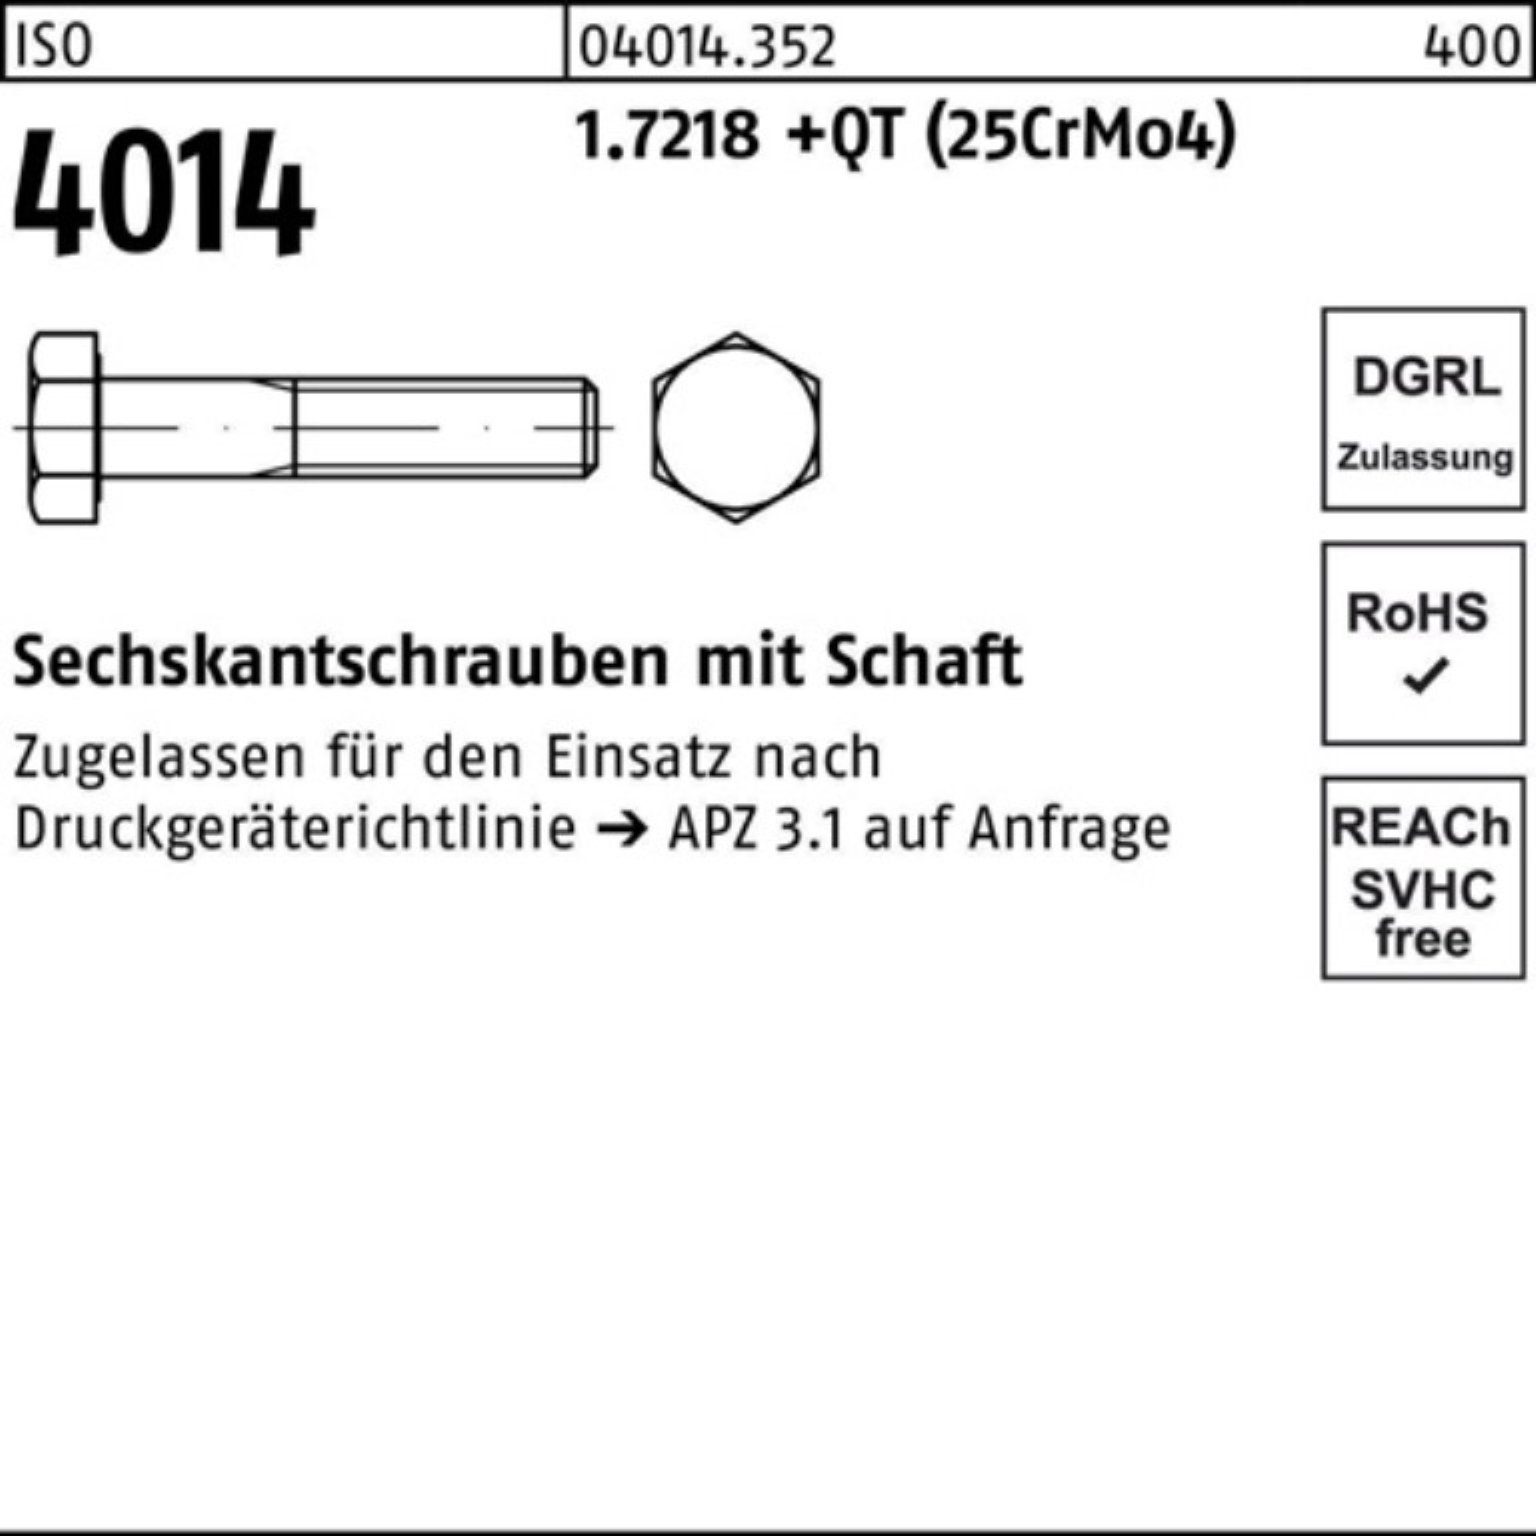 1.7218 Pack Sechskantschraube Sechskantschraube 100er ISO Schaft M12x 160 +QT 4014 Bufab (25Cr